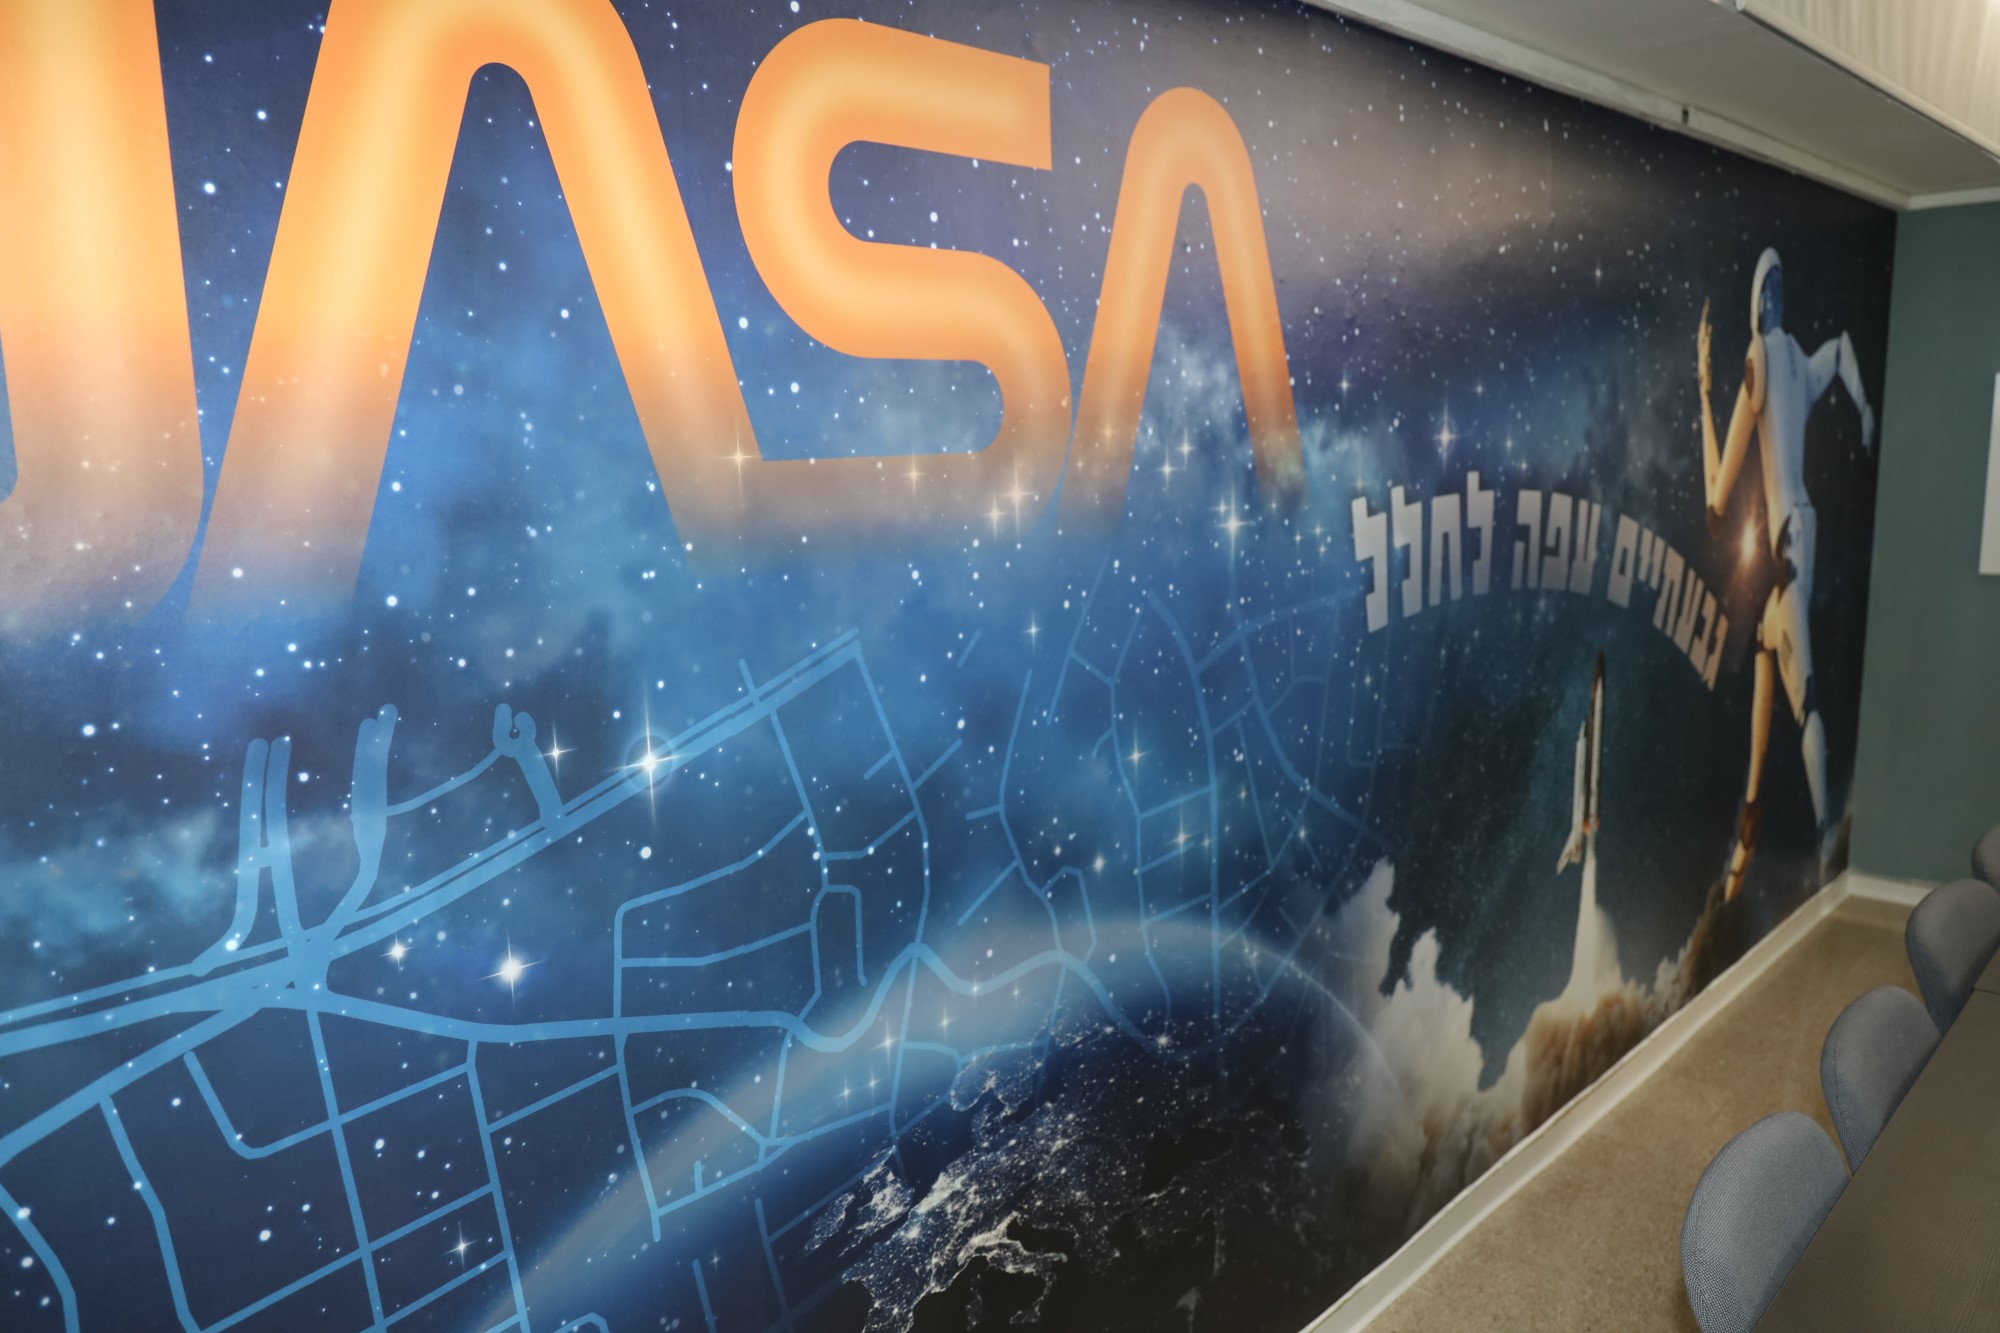 עושים סדר בתחנת החלל  קייטנת פסח בנושא החלל לתלמידי א'-ב' במסגרת ביה"ס של החגים